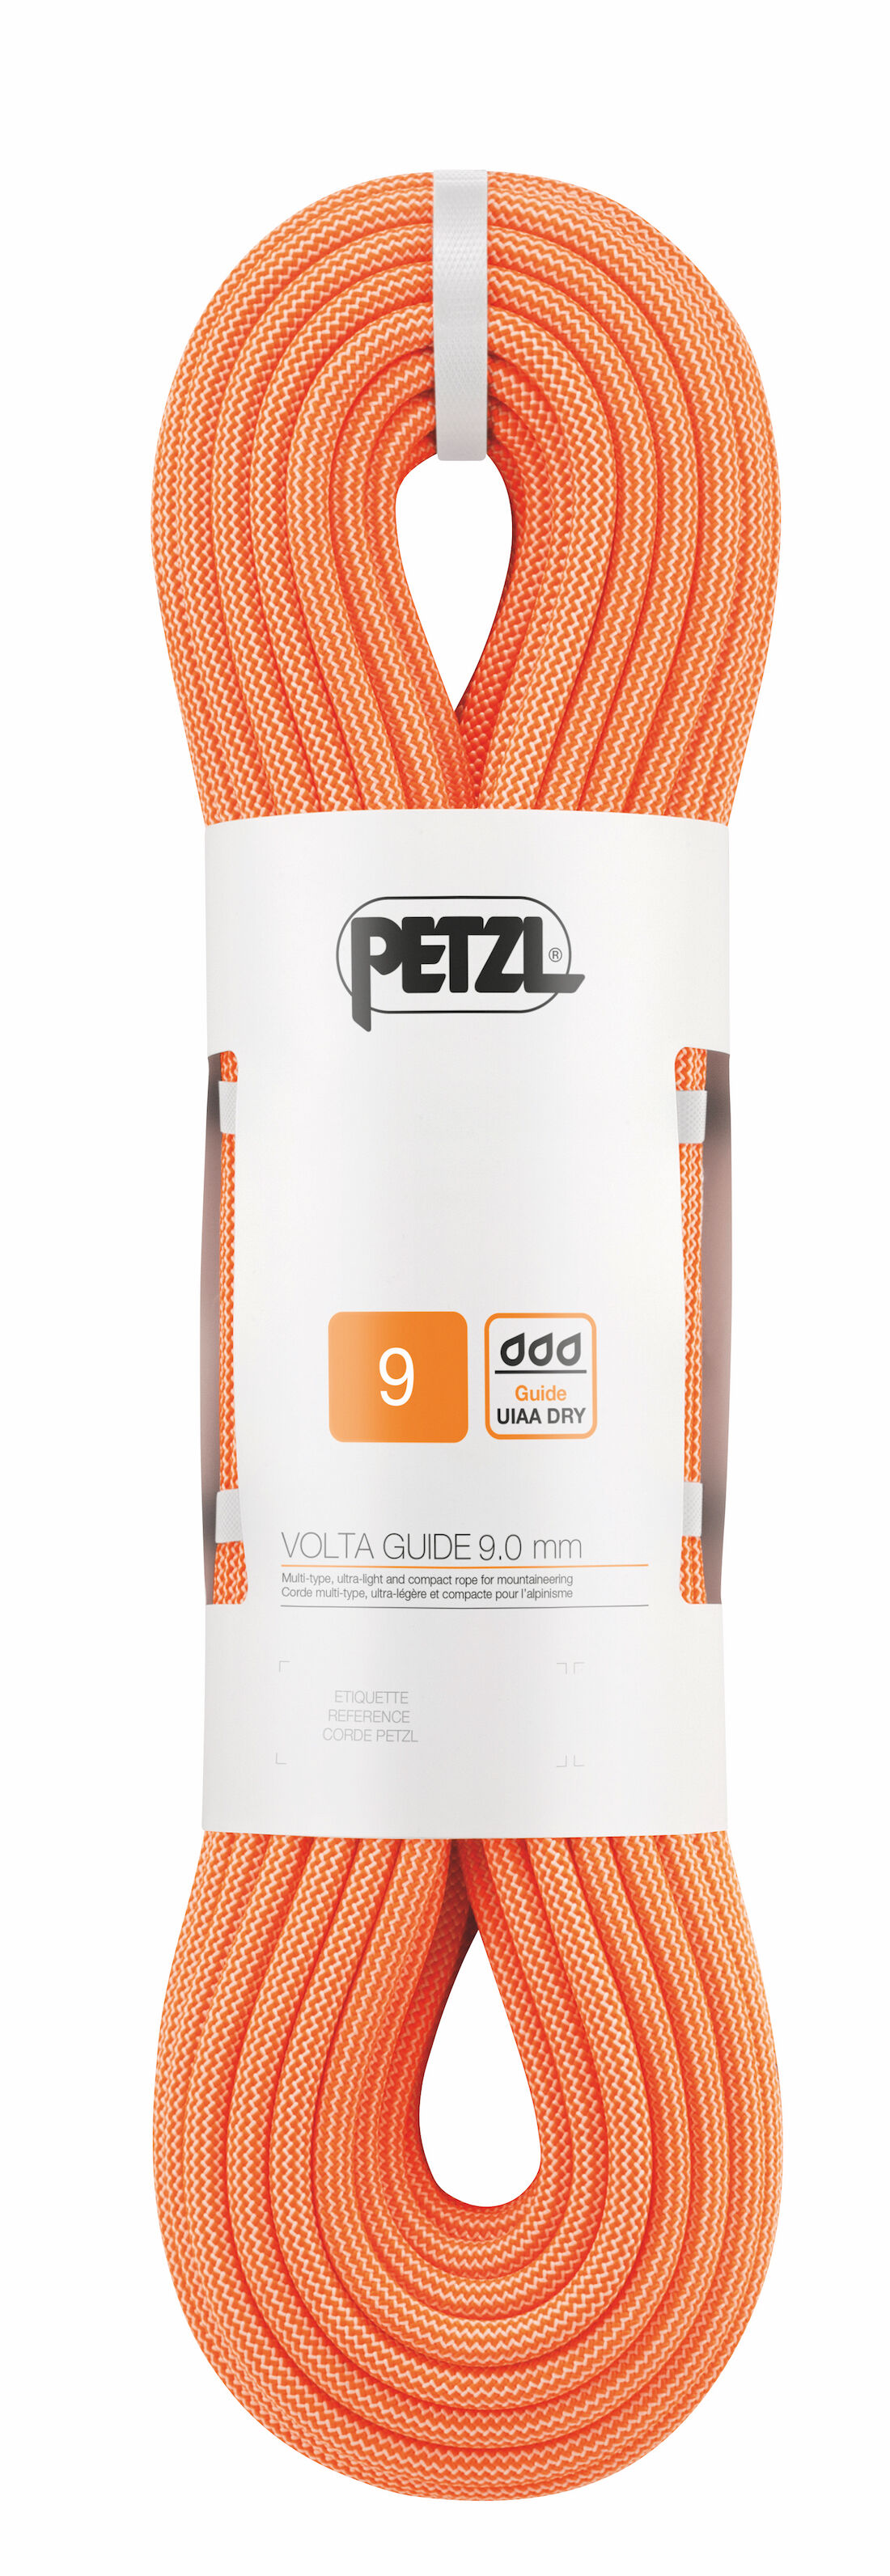 Petzl Volta Guide 9 mm - Kletterseil